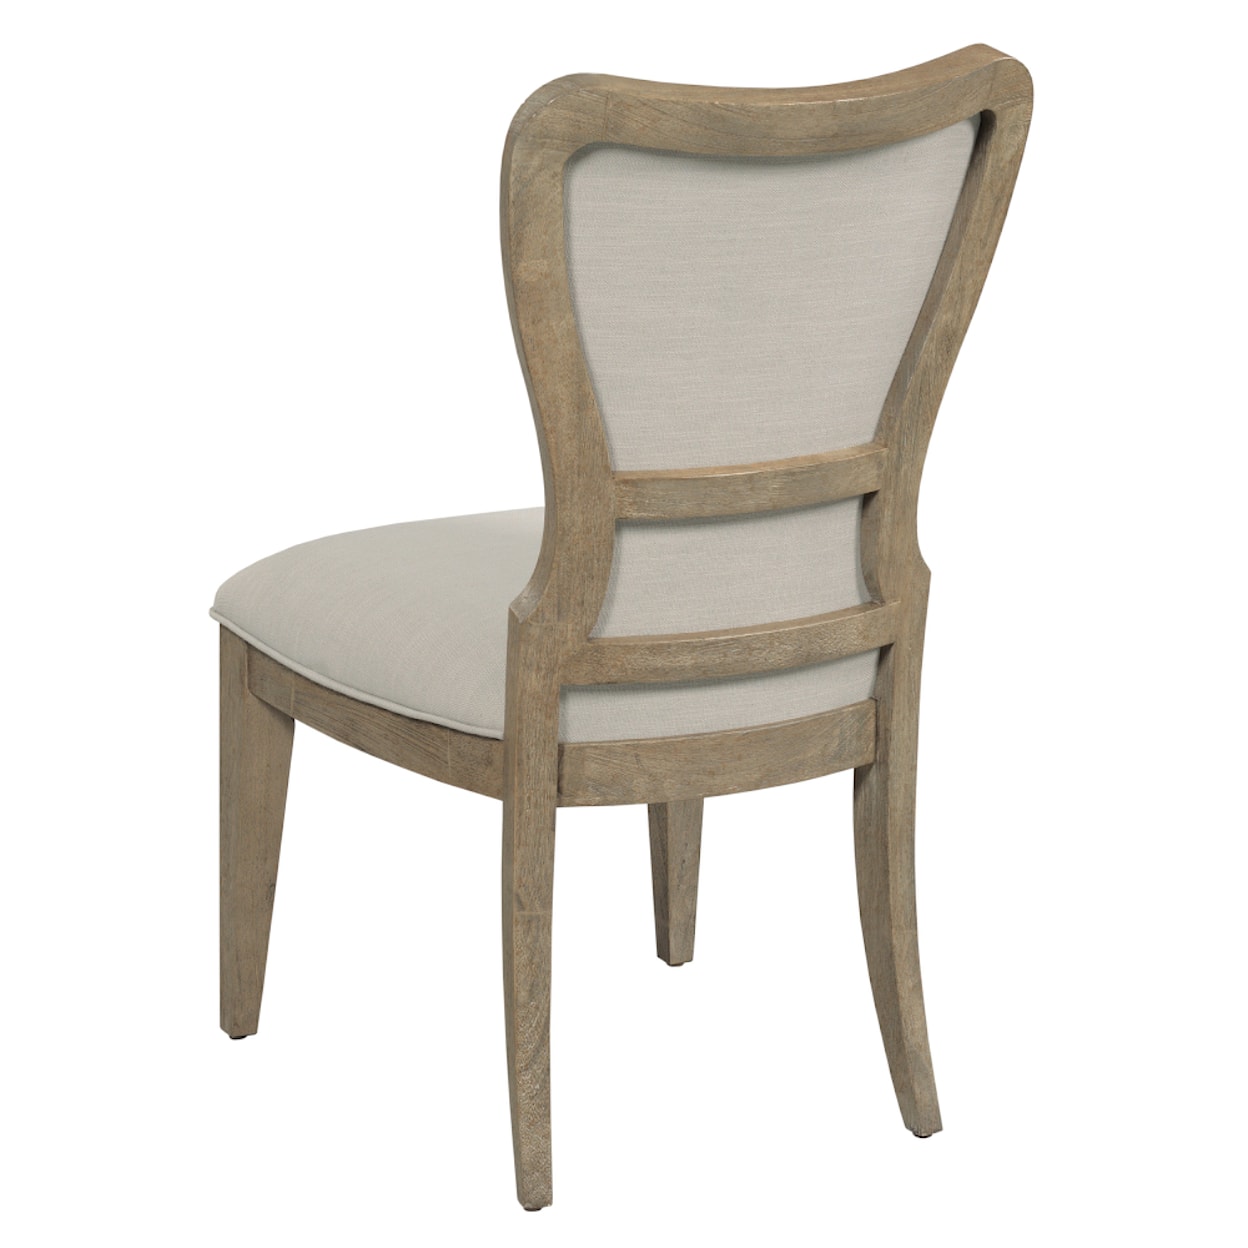 Kincaid Furniture Urban Cottage Merritt Upholstered Side Chair